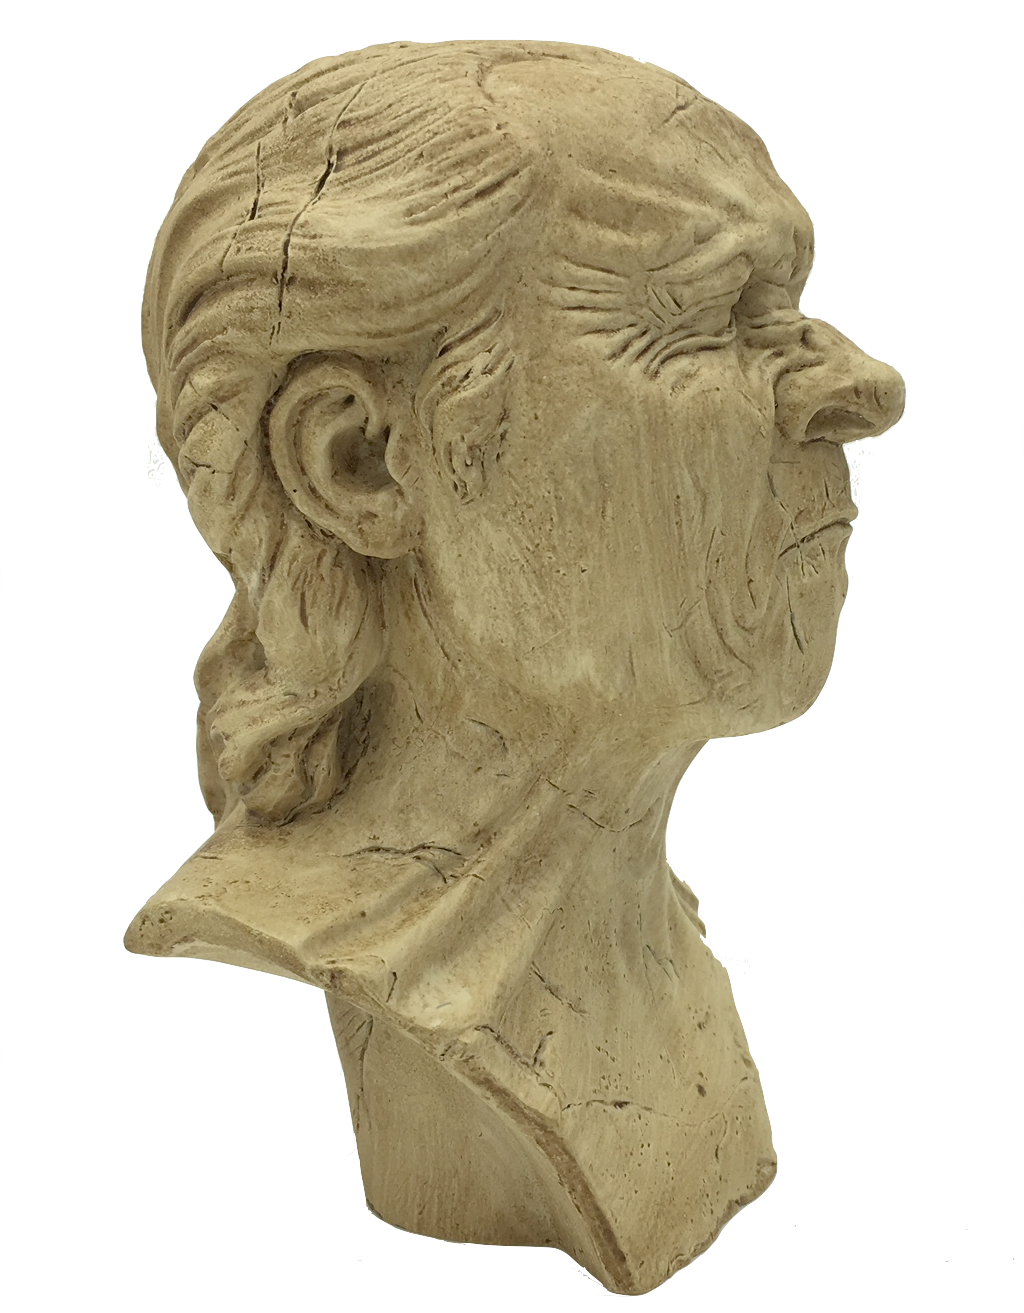 Pocket Art Vexed Man Caricature Study by Messerschmidt Miniature Statue